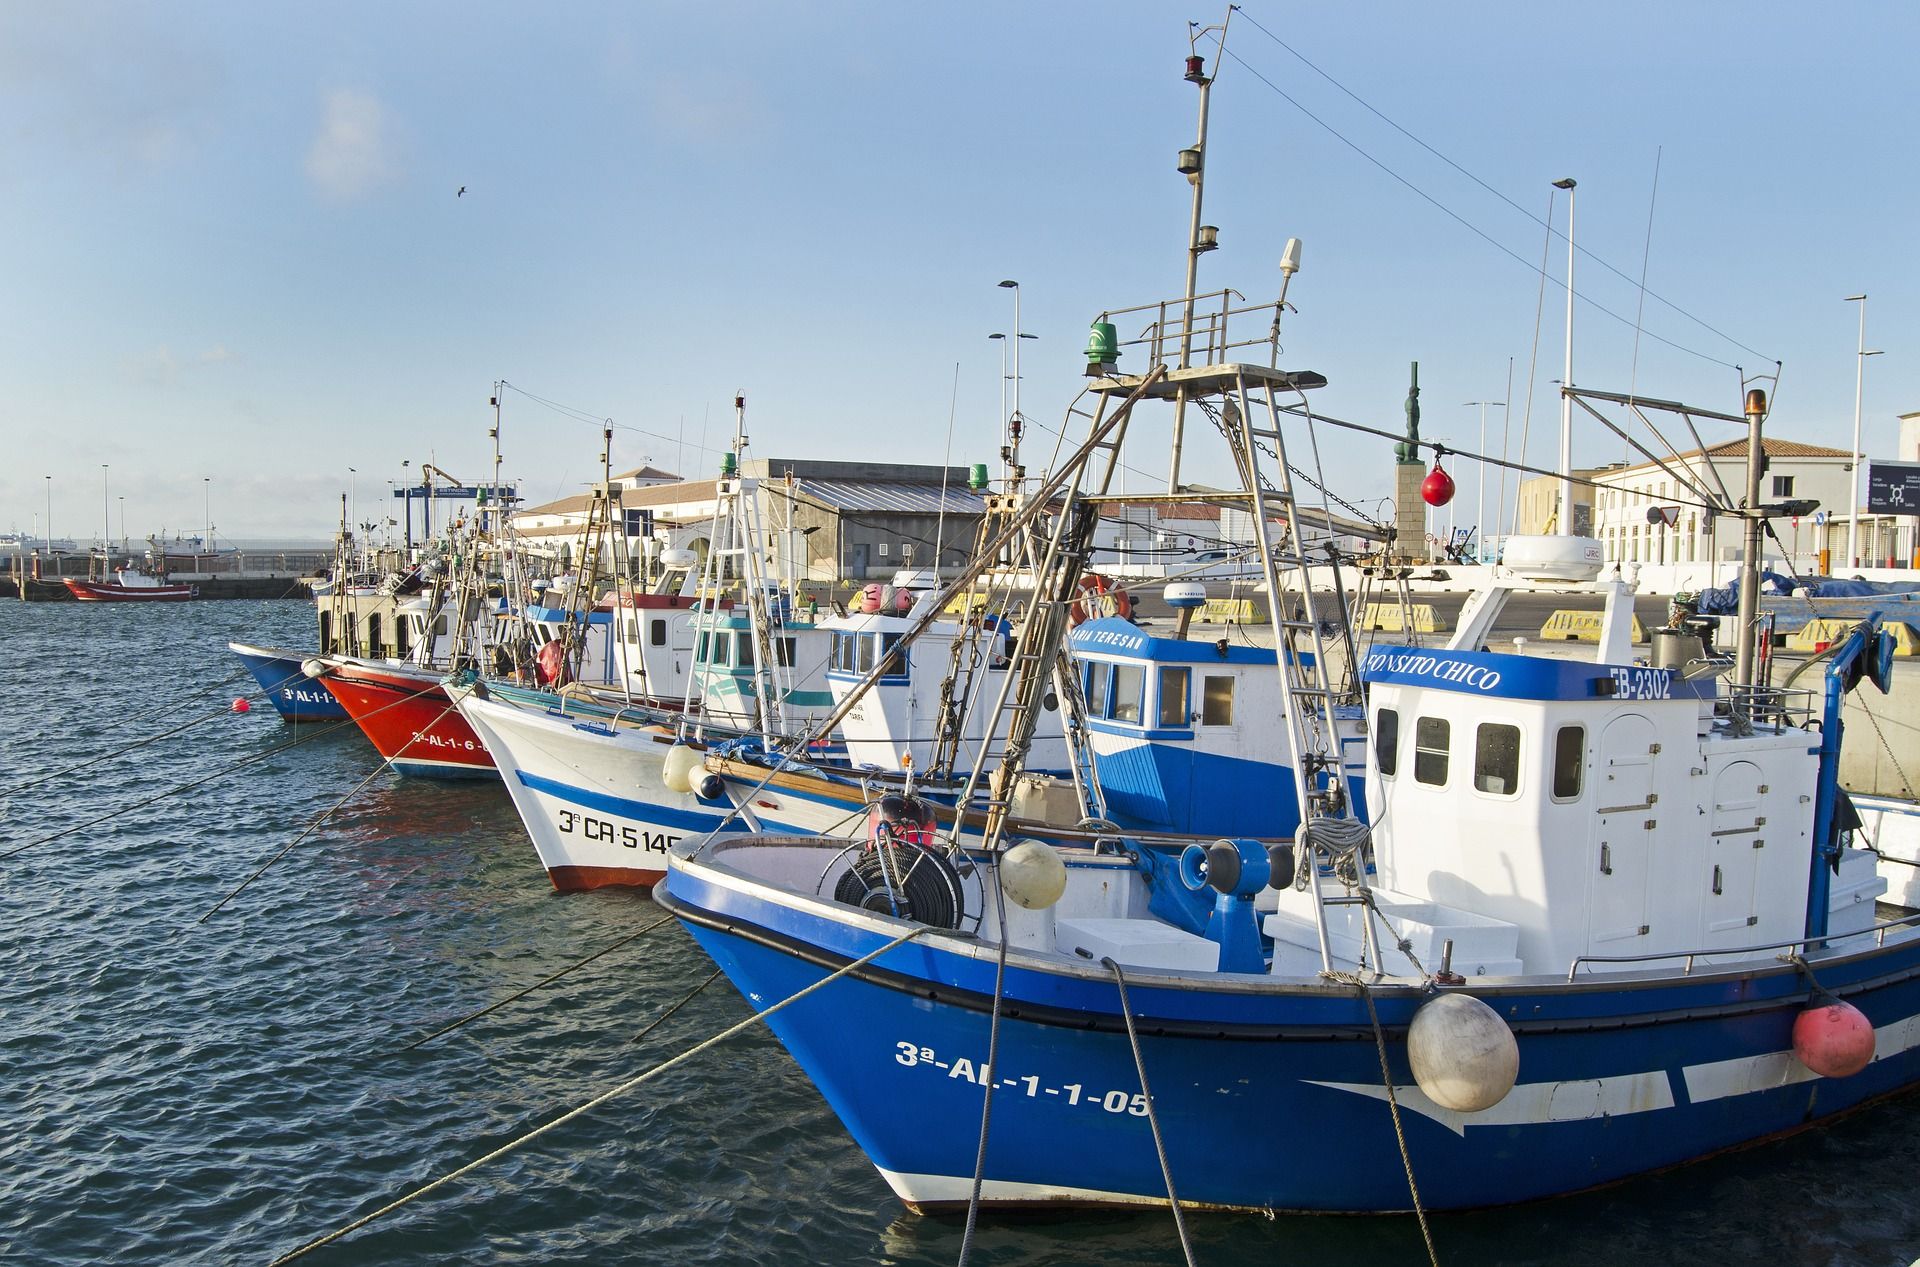 Varios países mediterráneos adoptan medidas contra redes de pesca abandonadas / Foto: Jim Black - Pixabay